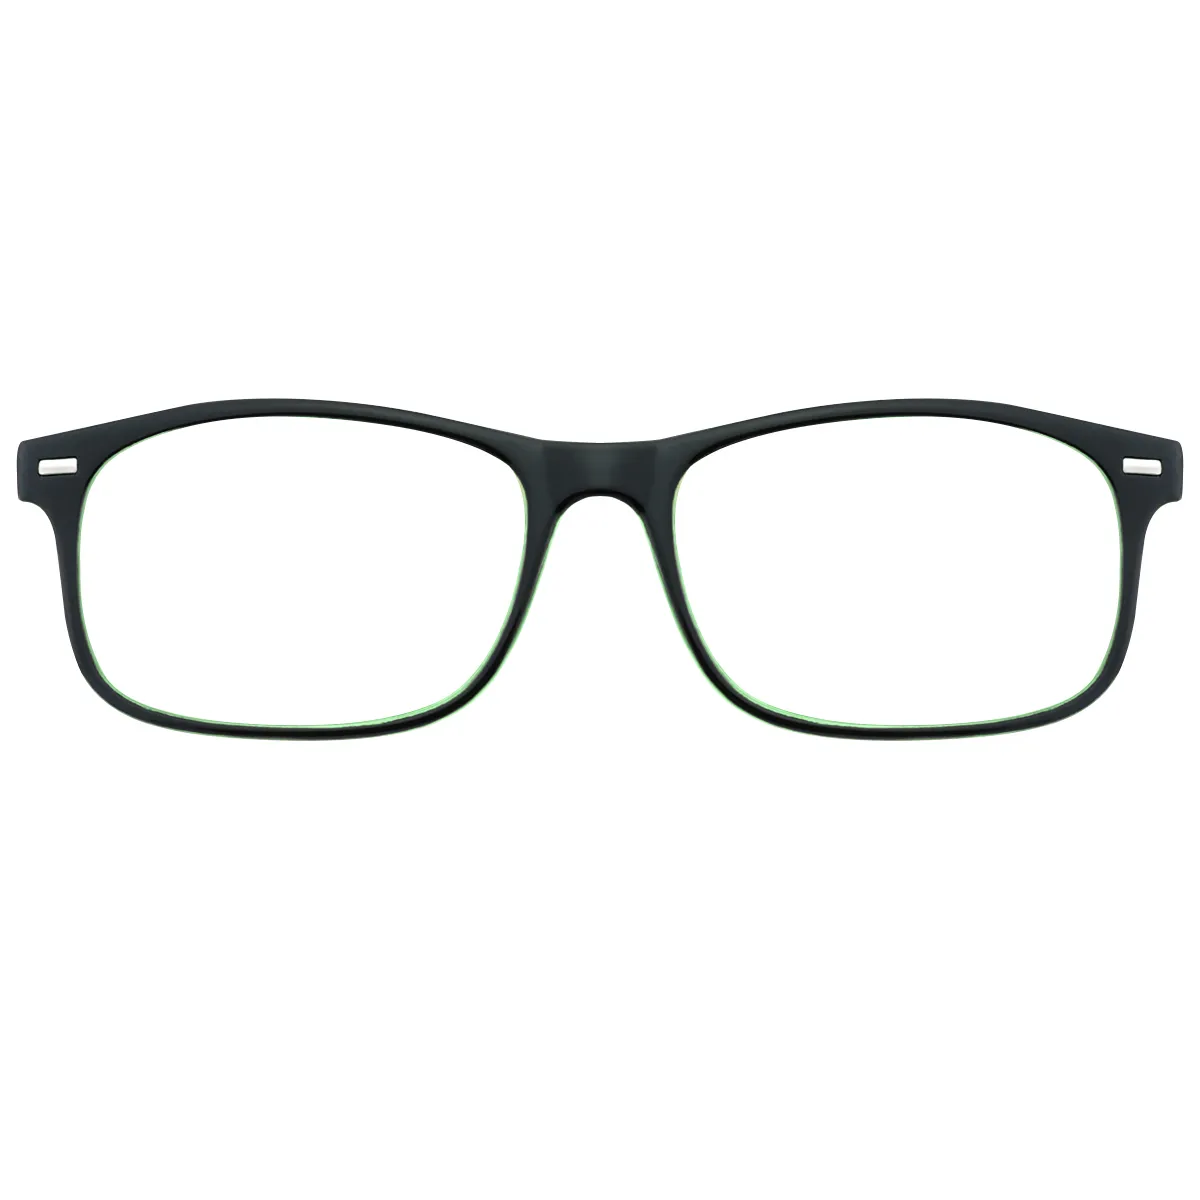 Elymais - Rectangle Green Reading glasses for Men & Women